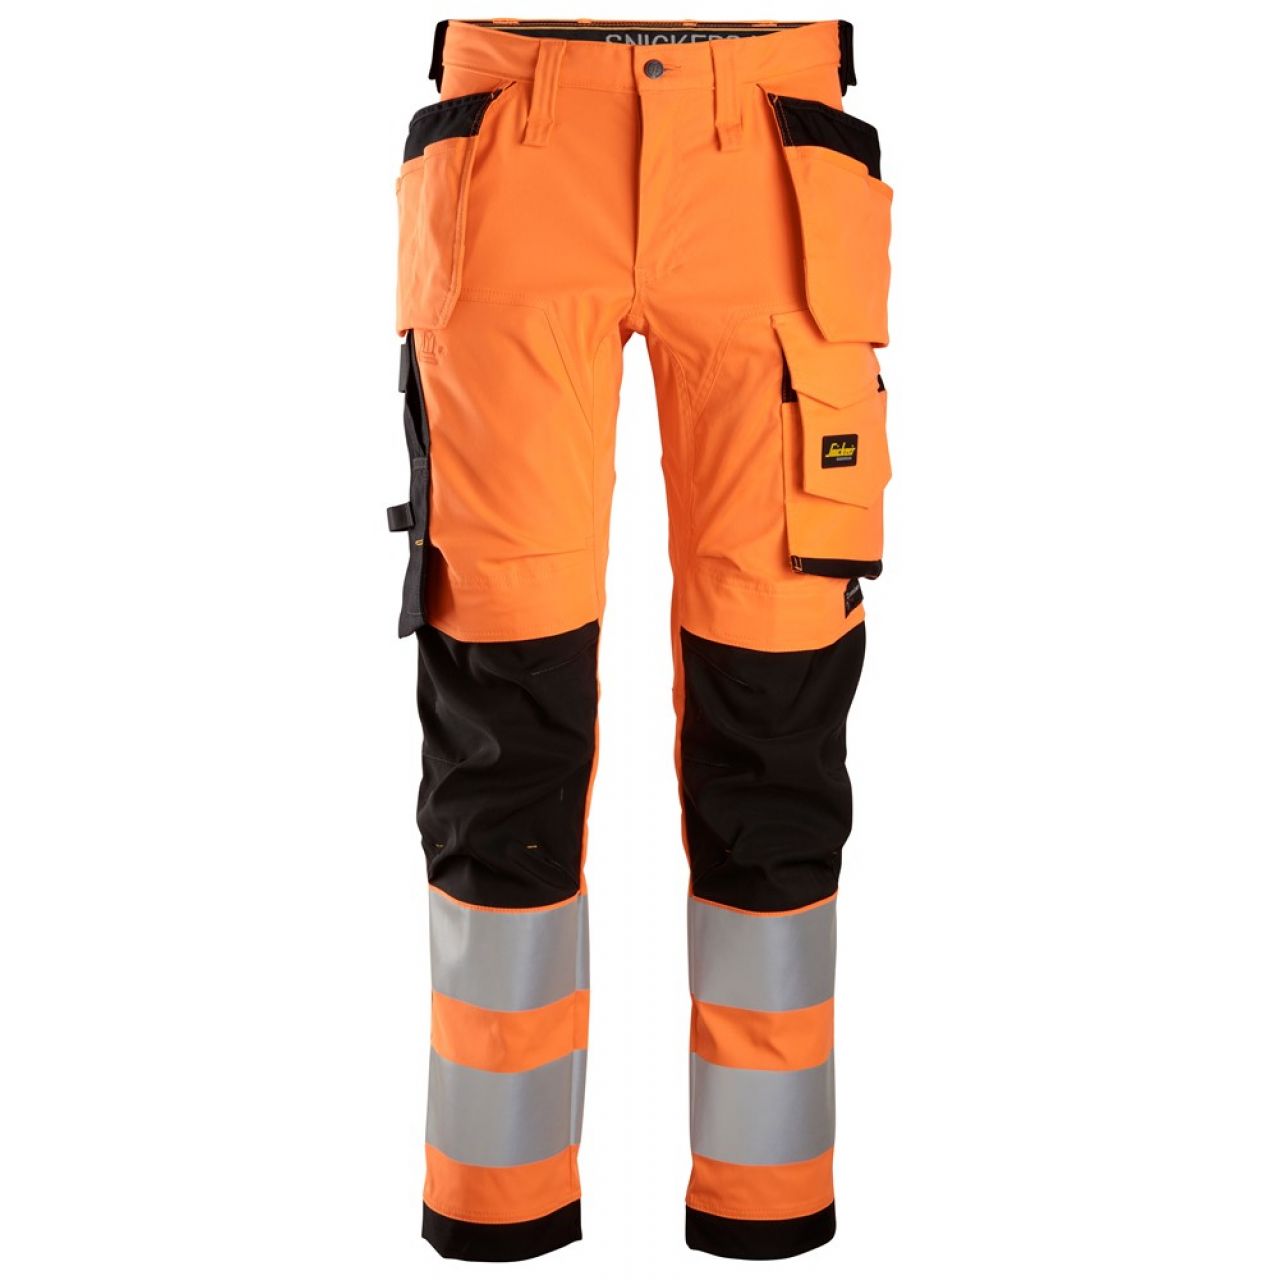 6243 Pantalones largos de trabajo elásticos de alta visibilidad clase 2 con bolsillos flotantes naranja-negro talla 64